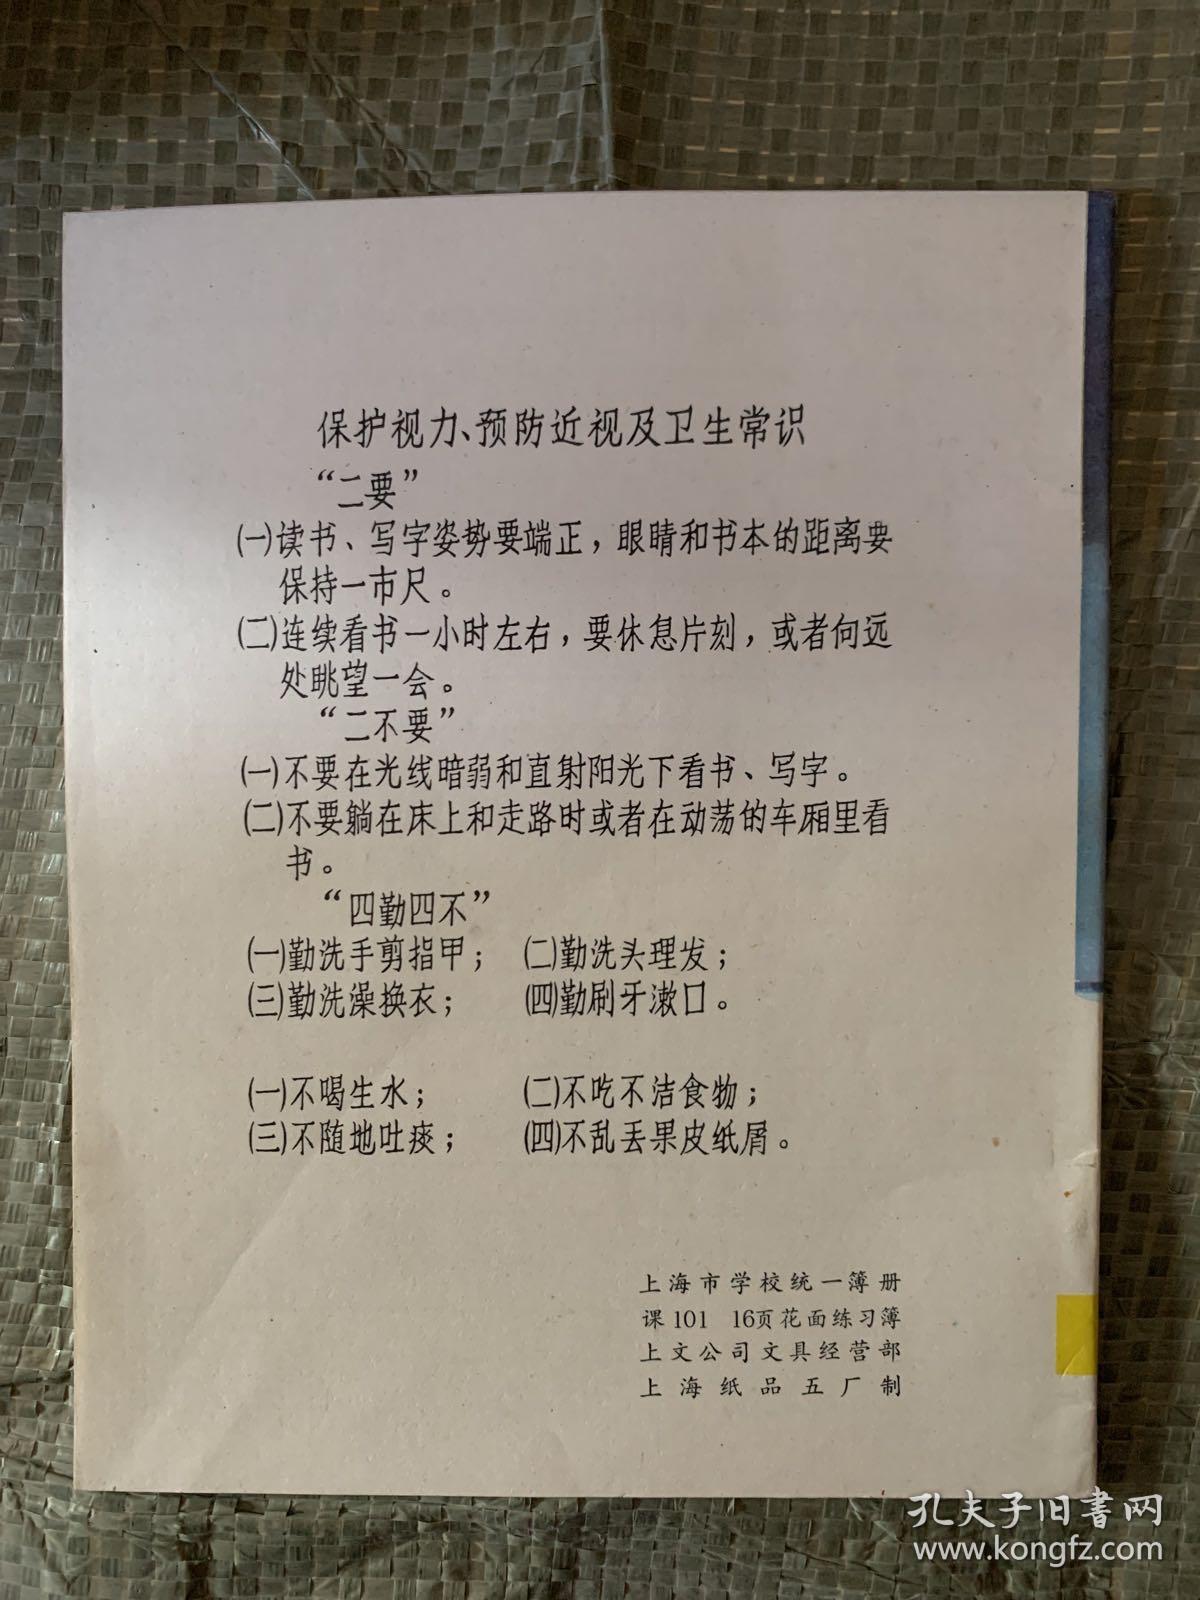 上海市学校统一簿册 练习簿 未使用.....、、、、